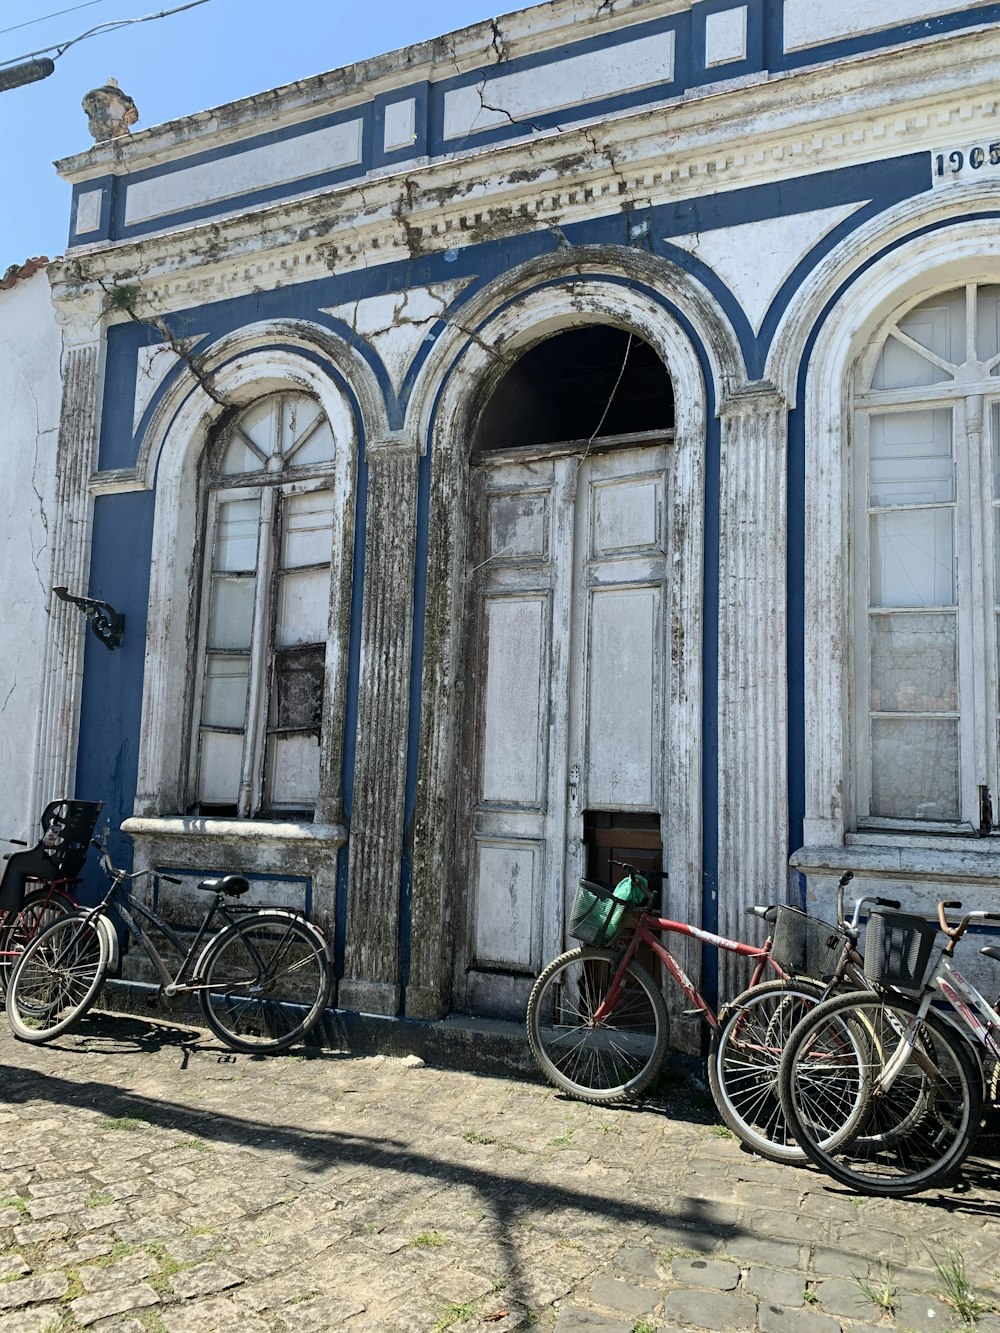 파란색 콘크리트 건물 앞에 주차된 자전거